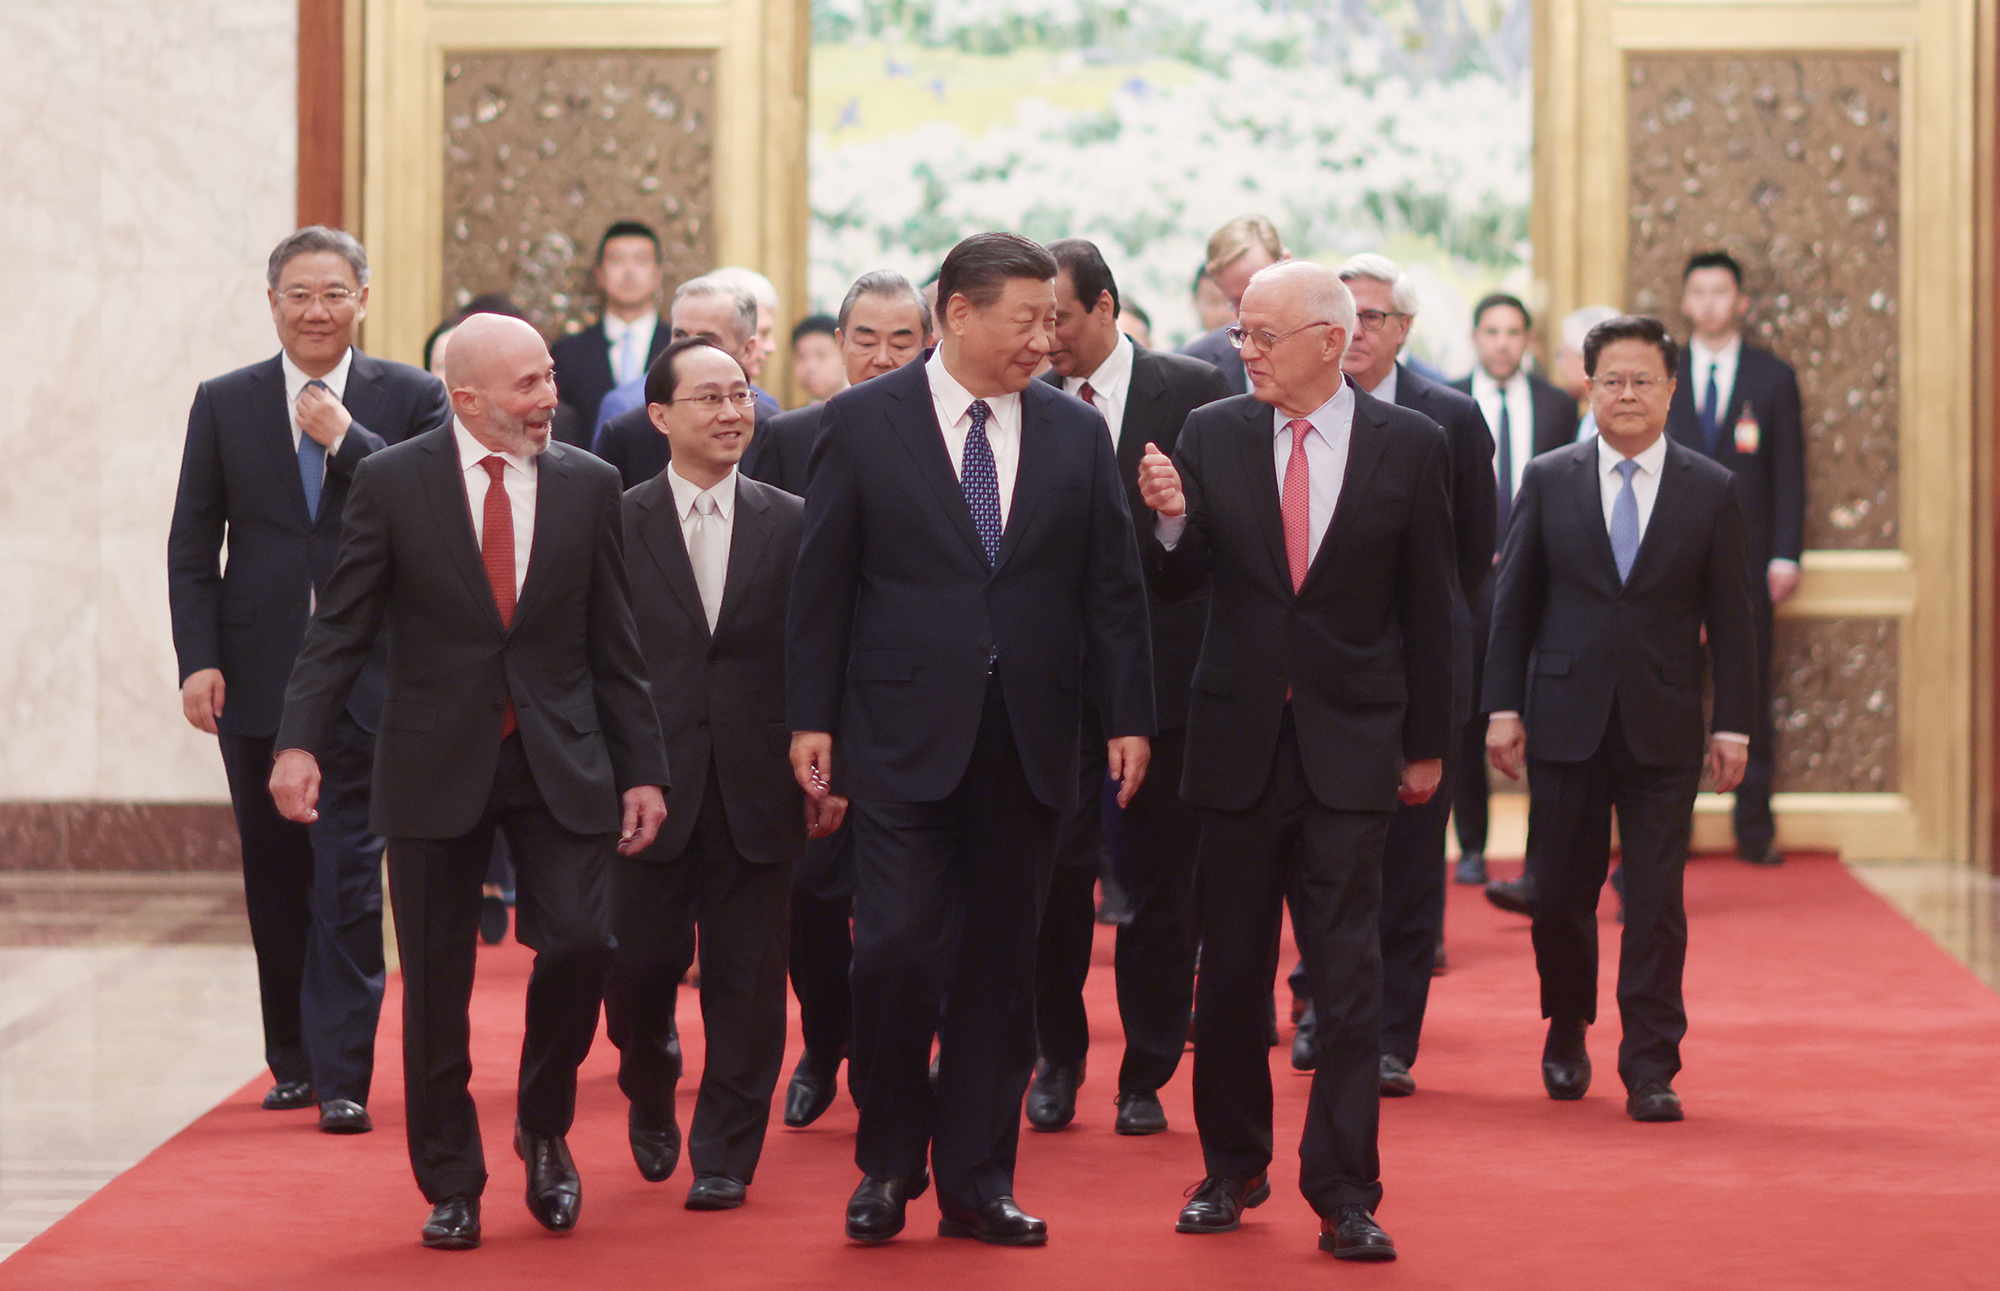 Chiński prezydent Xi Jinping spotyka się z przedstawicielami amerykańskiego biznesu, środowisk strategicznych i akademickich w Wielkiej Sali Ludowej w Pekinie, 27 marca 2024 r. Zdjęcie: cnsphoto